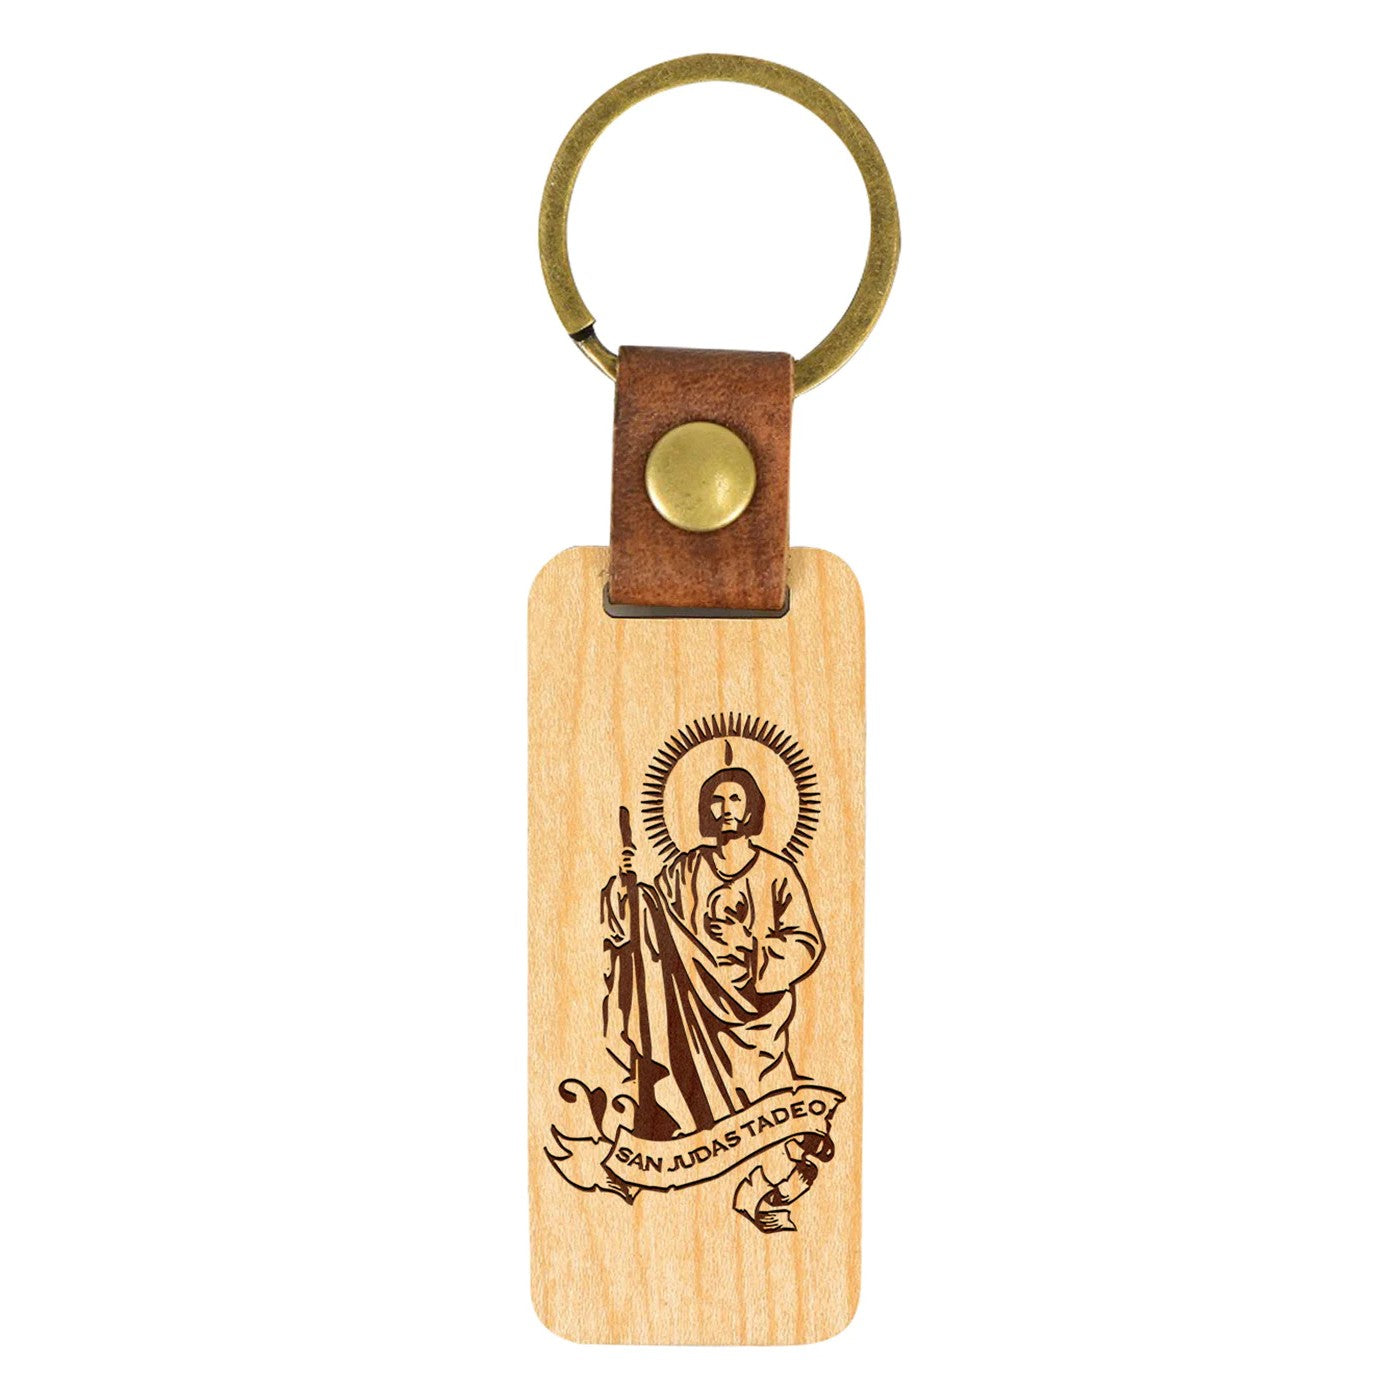 Unique Handmade Wooden Keychain - San Judas